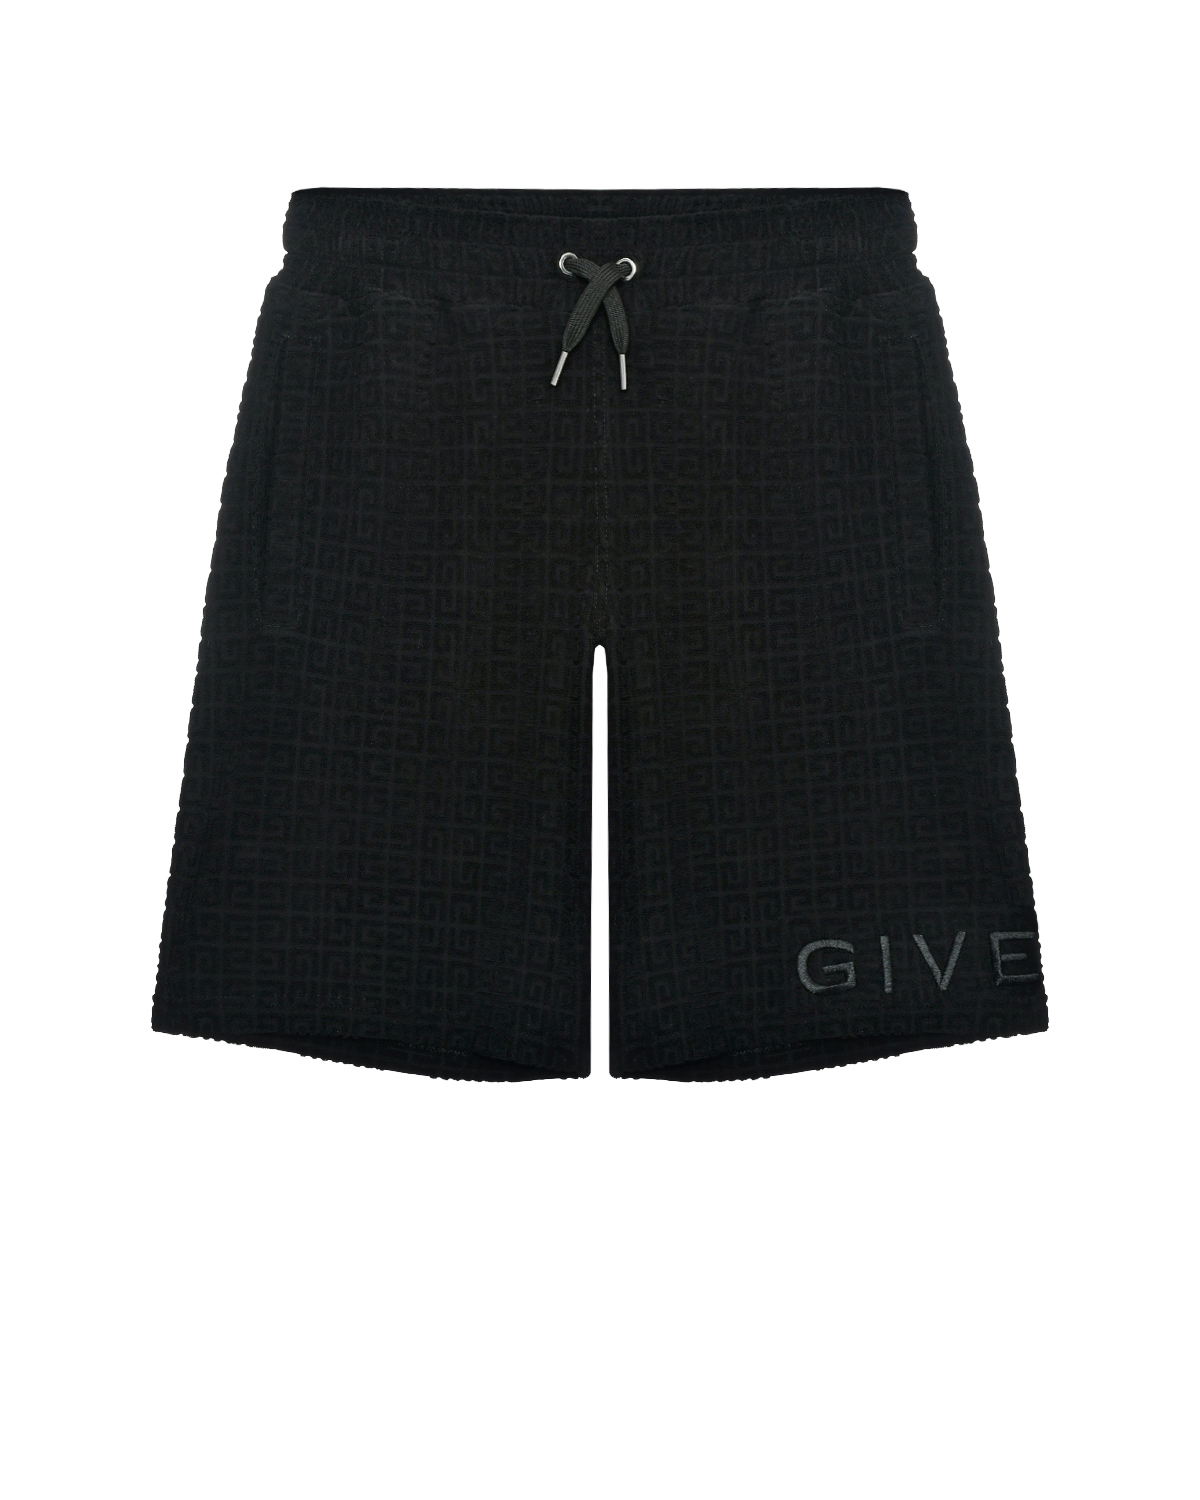 Бермуды велюровые со сплошным лого Givenchy, размер 152, цвет нет цвета